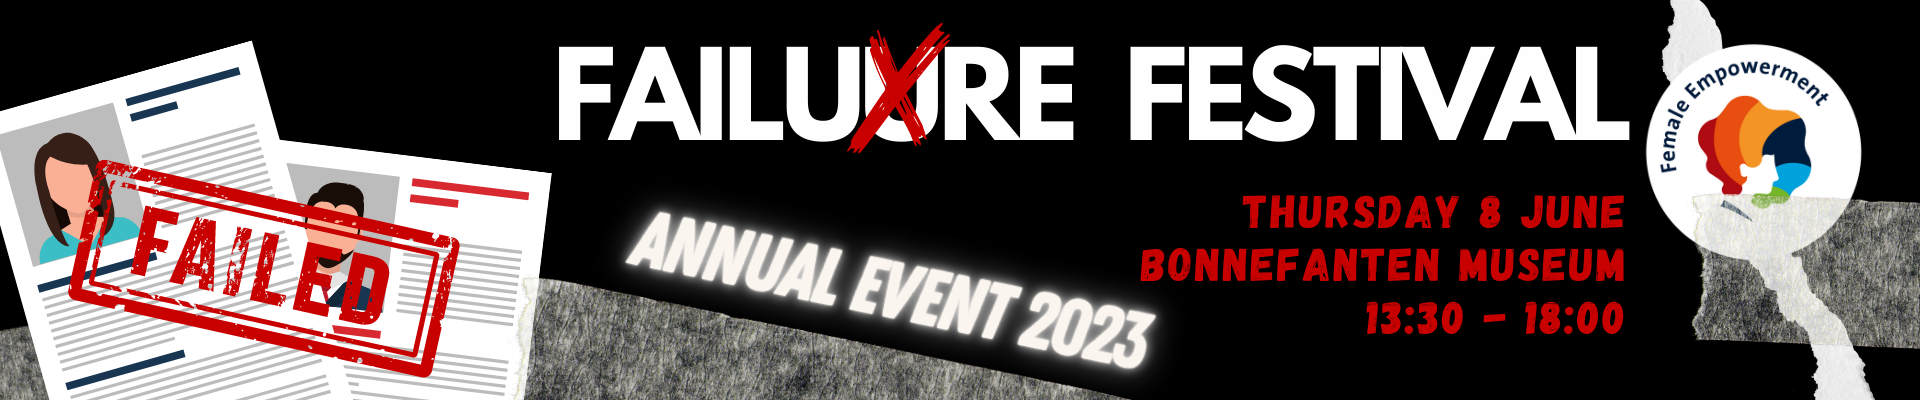 FEM - Annual Event 2023: Failure Festival